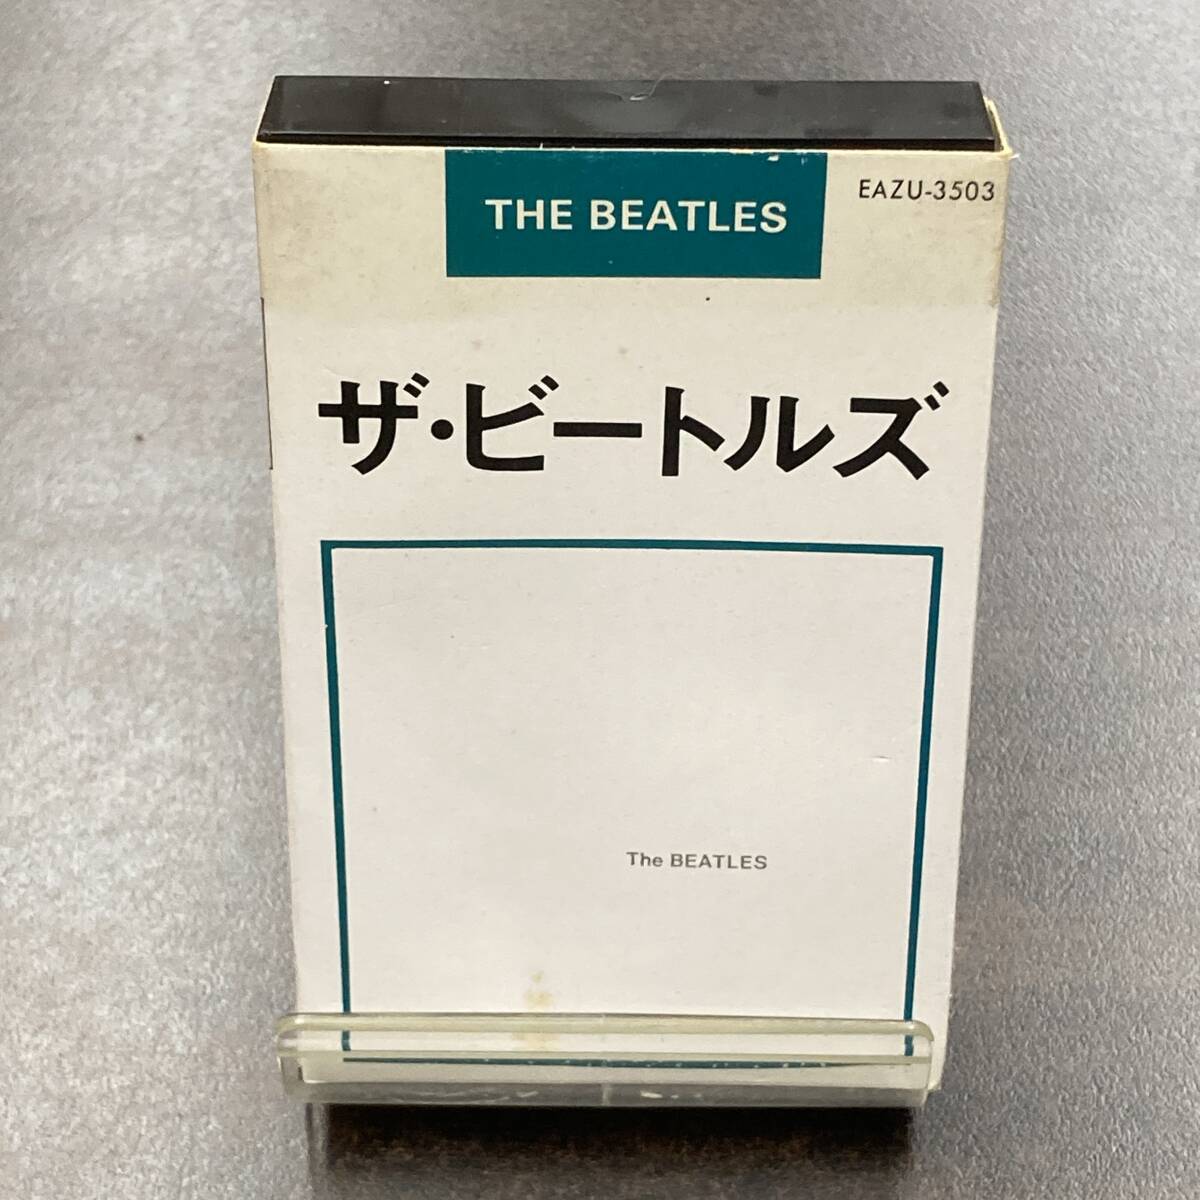 1129M ザ・ビートルズ ザ・ビートルズ THE BEATLES カセットテープ / THE BEATLES Cassette Tapeの画像1